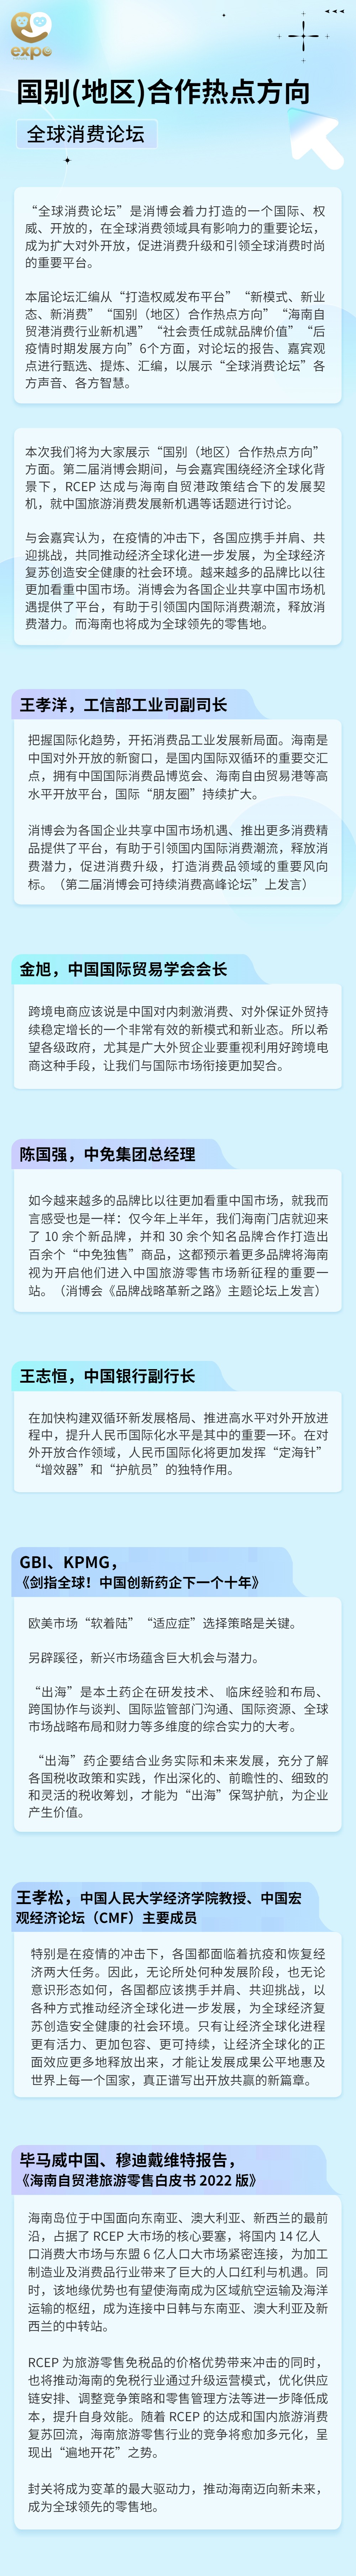 融媒体经济会议工作报告文章长图 (2).jpg